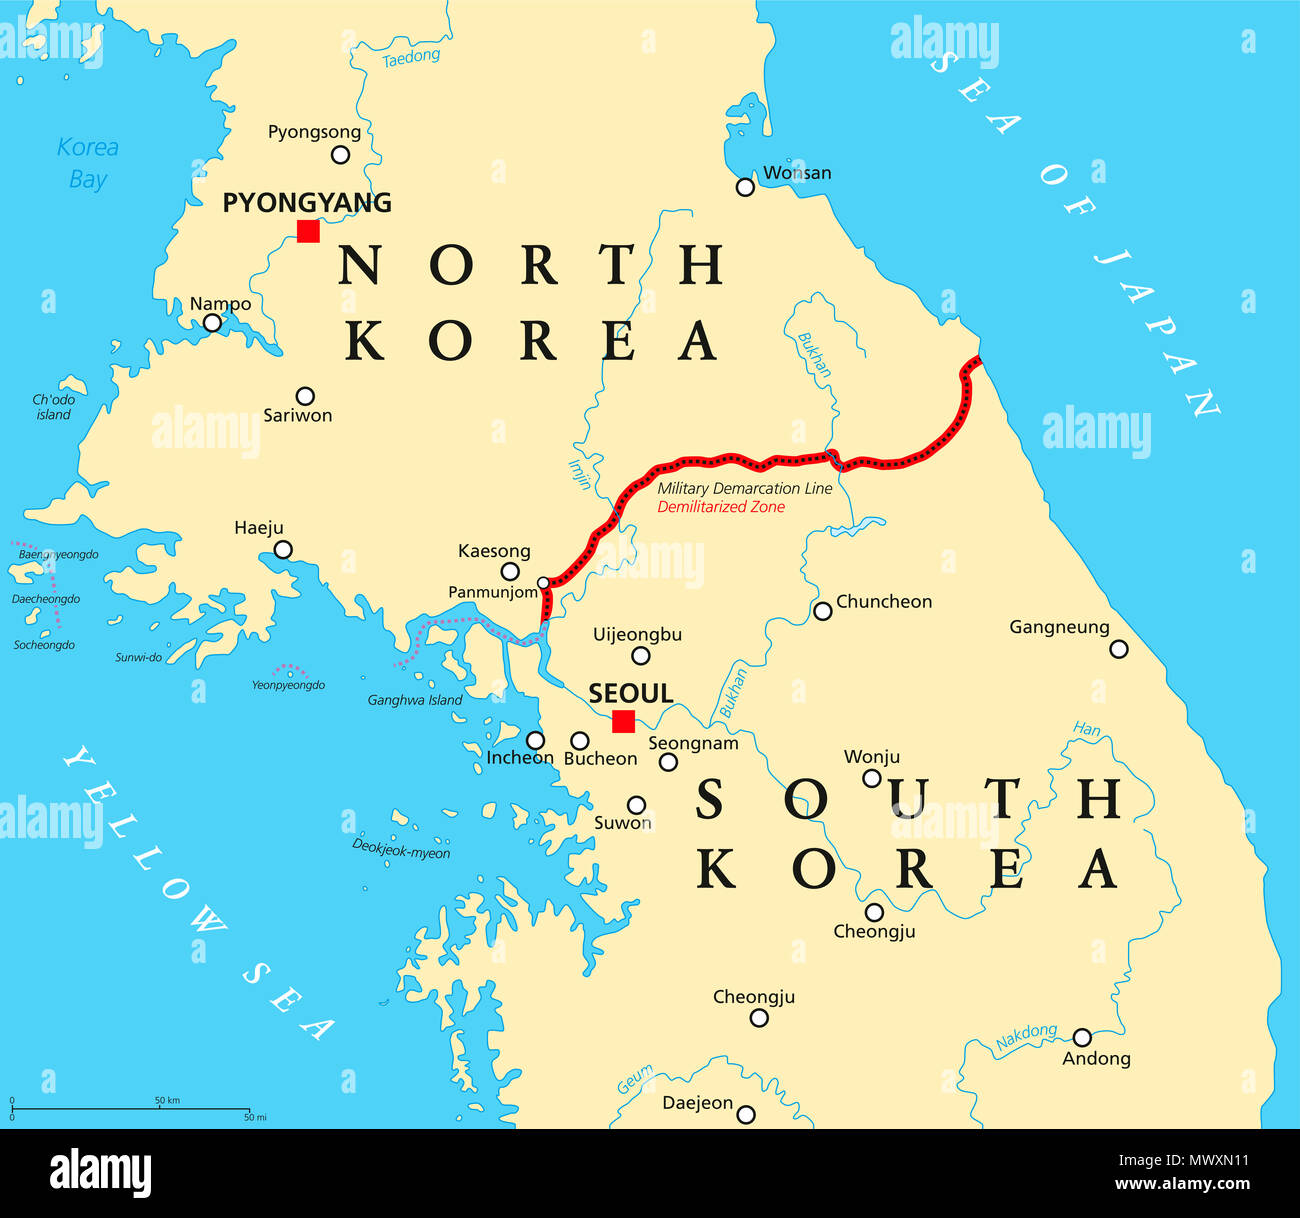 Koreanische Halbinsel, entmilitarisierte Zone, politische Karte. Nord- und Südkorea mit militärischen Demarkationslinie, Hauptstädte, Grenzen, die wichtigsten Städte. Stockfoto